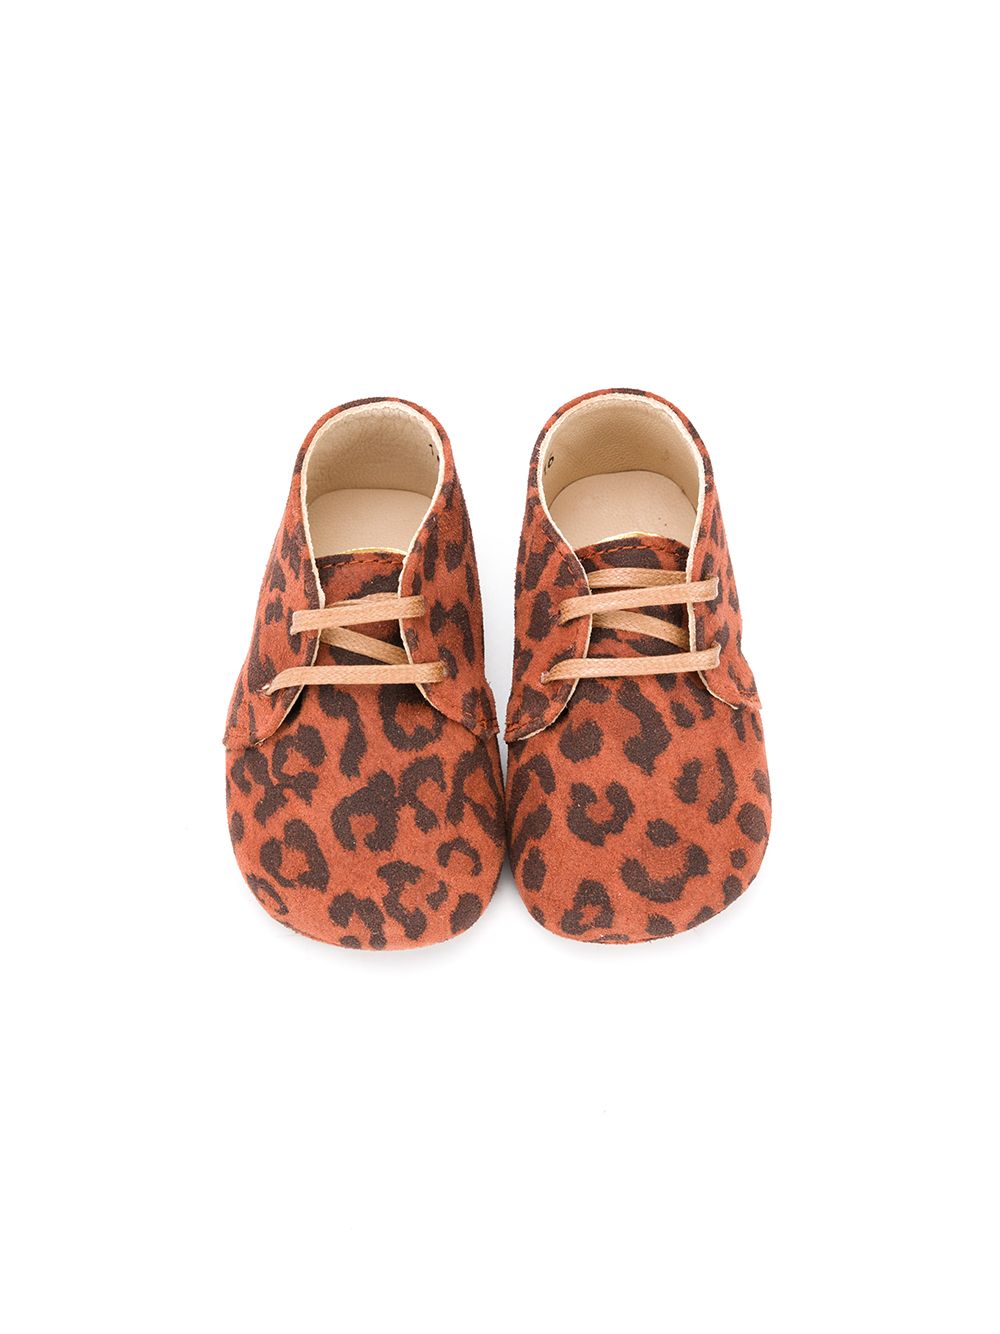 фото Gallucci kids ботинки с леопардовым принтом